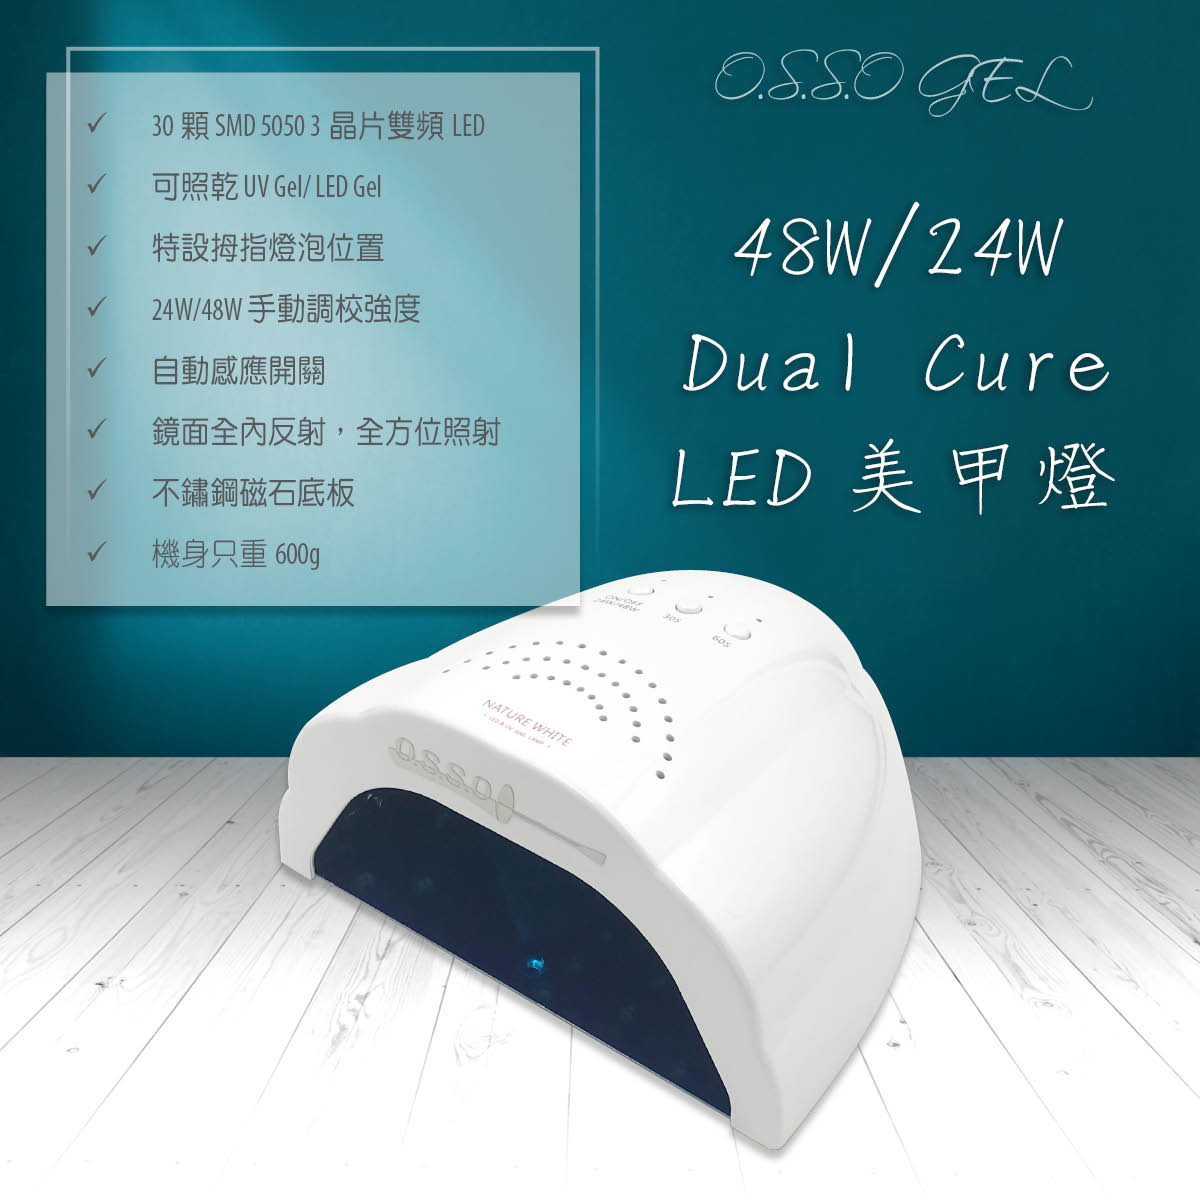 48W/24W Dual Cure 美甲燈